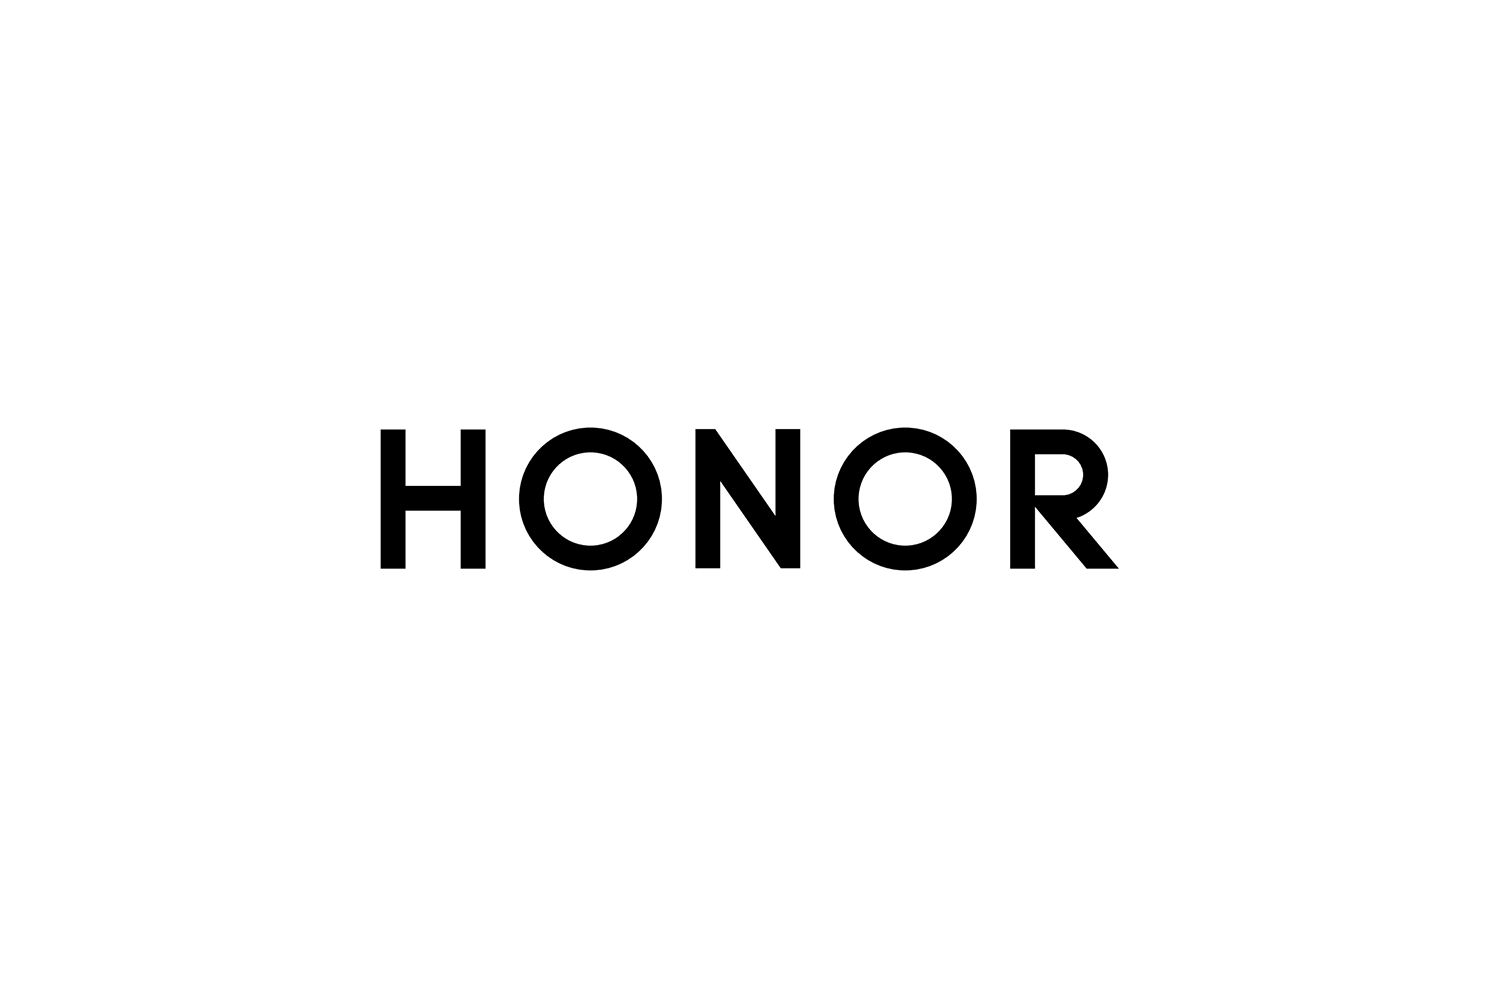 honor大logo壁纸图片